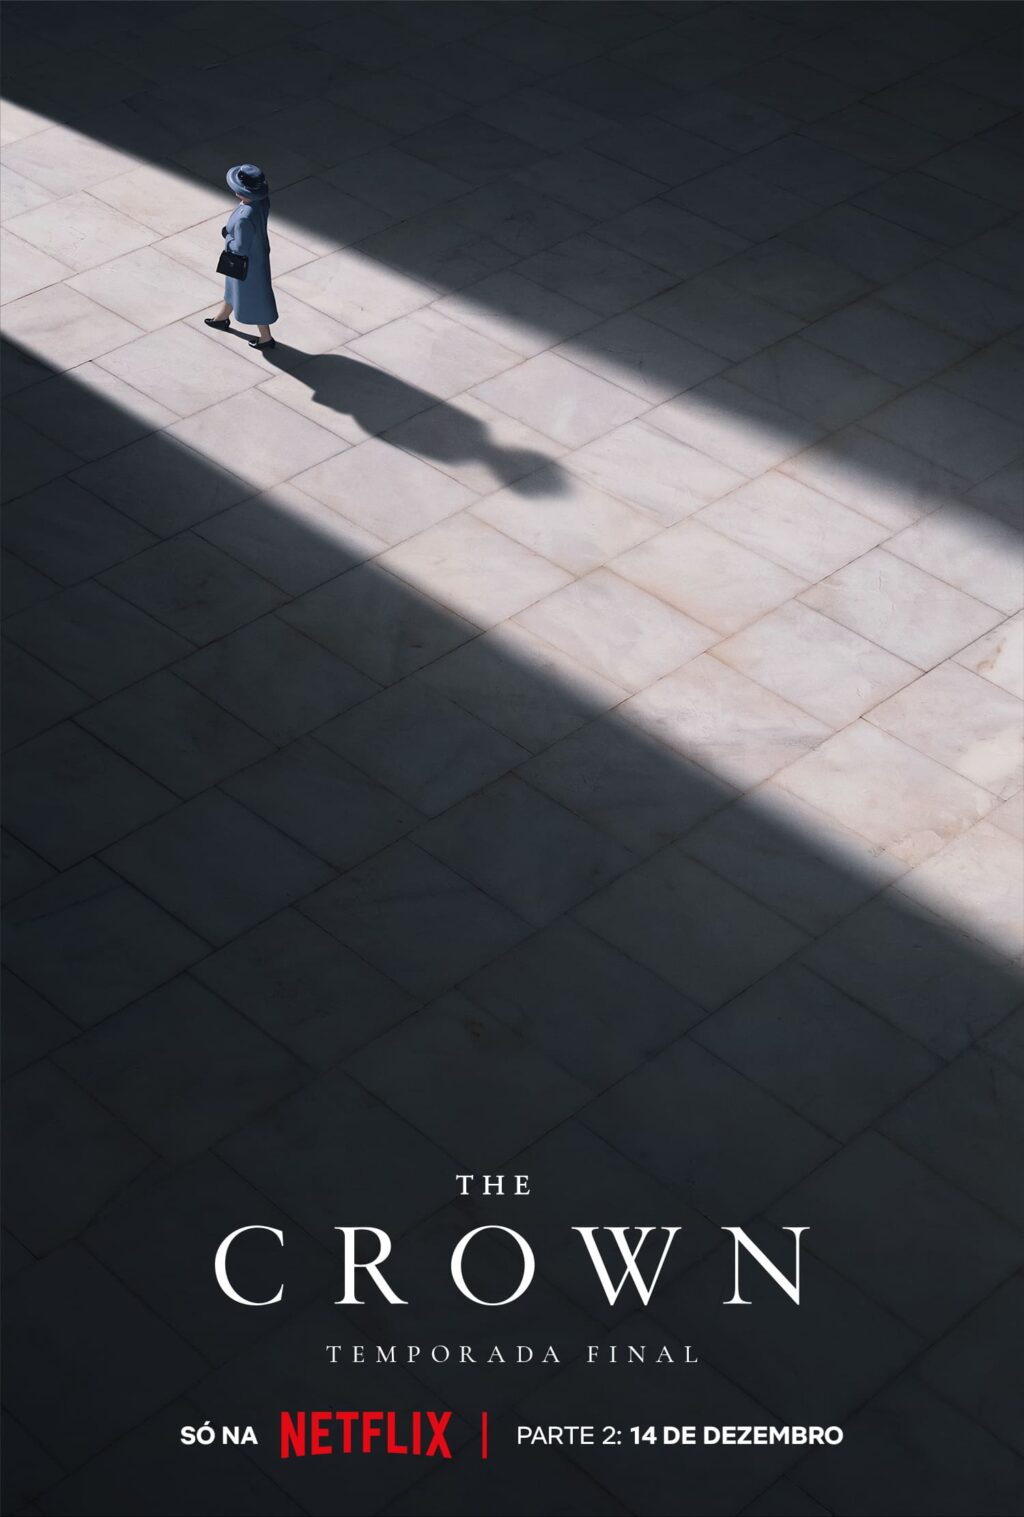 Pôster da Netflix para The Crown.